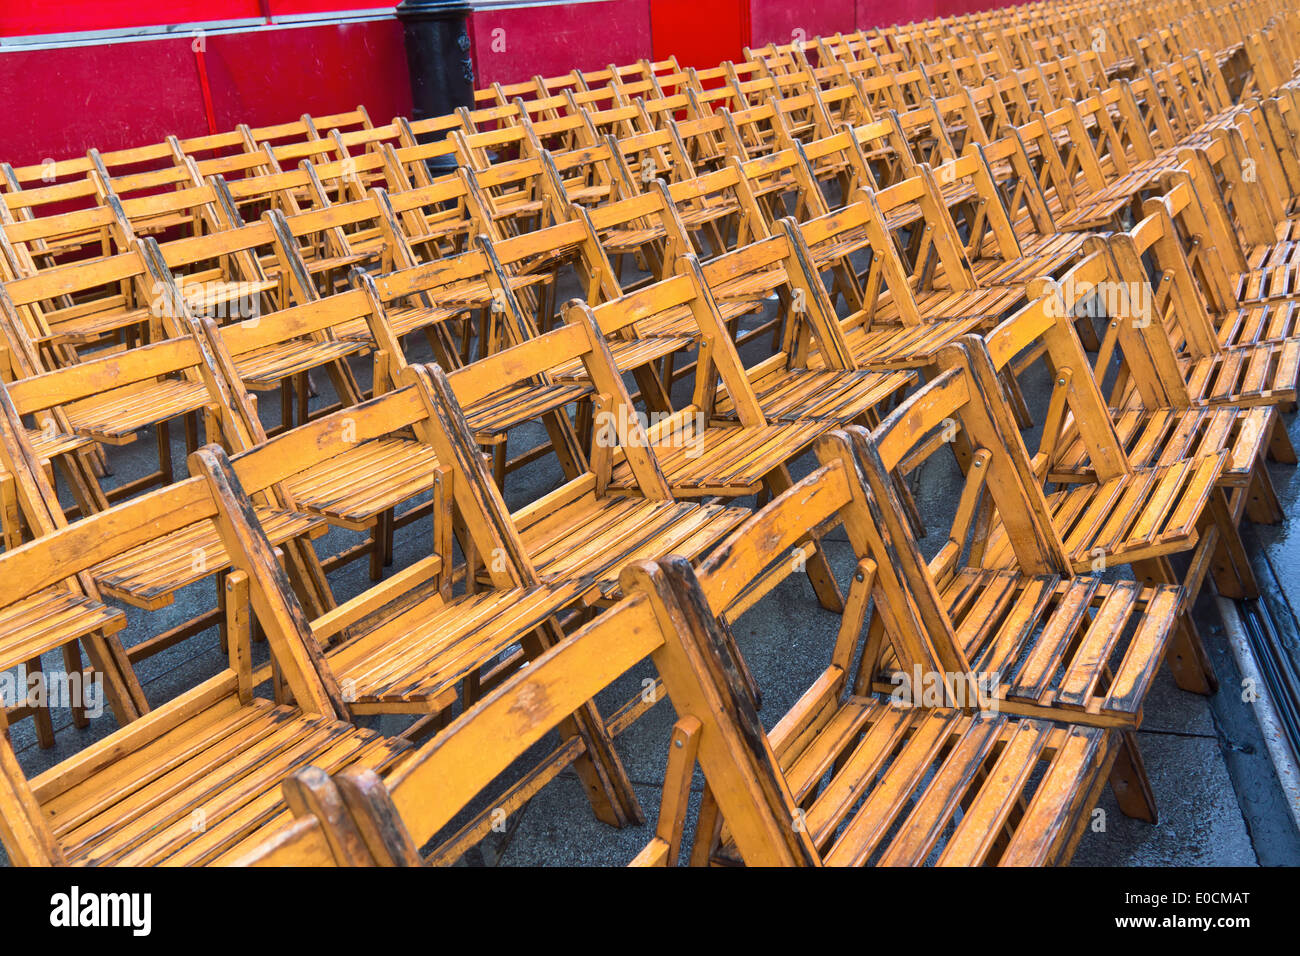 Many empty armchairs because of rain in event., Viele leere Sessel wegen Regens bei Veranstaltung. Stock Photo